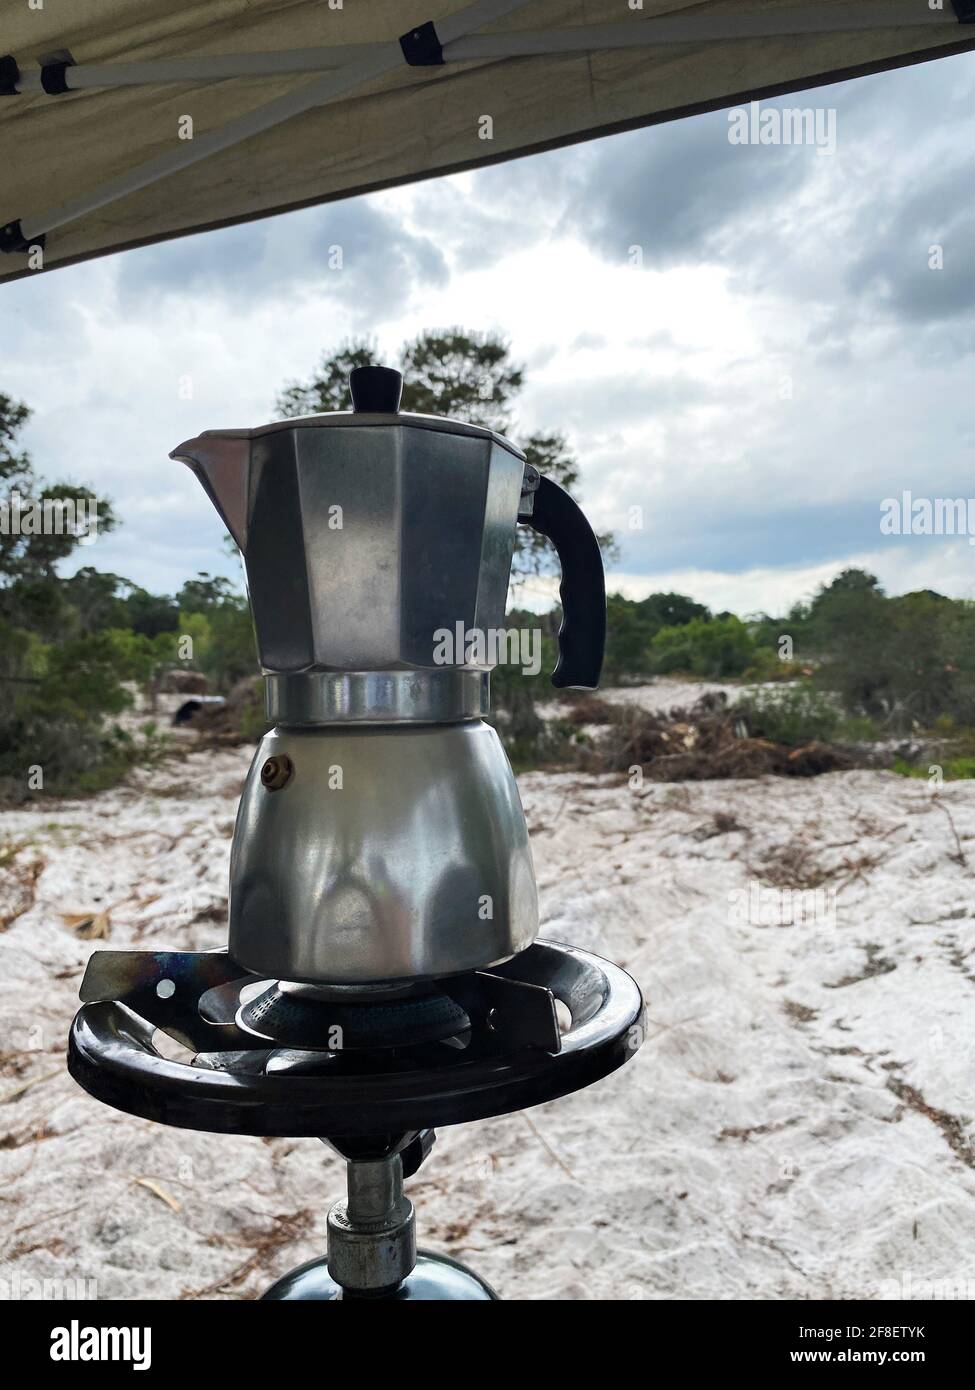 Café expreso en una cafetera cubana usando una mini cocina de gas con un  tanque de propano en una sola hornilla. Una tormenta se está gestando en el  fondo Fotografía de stock 